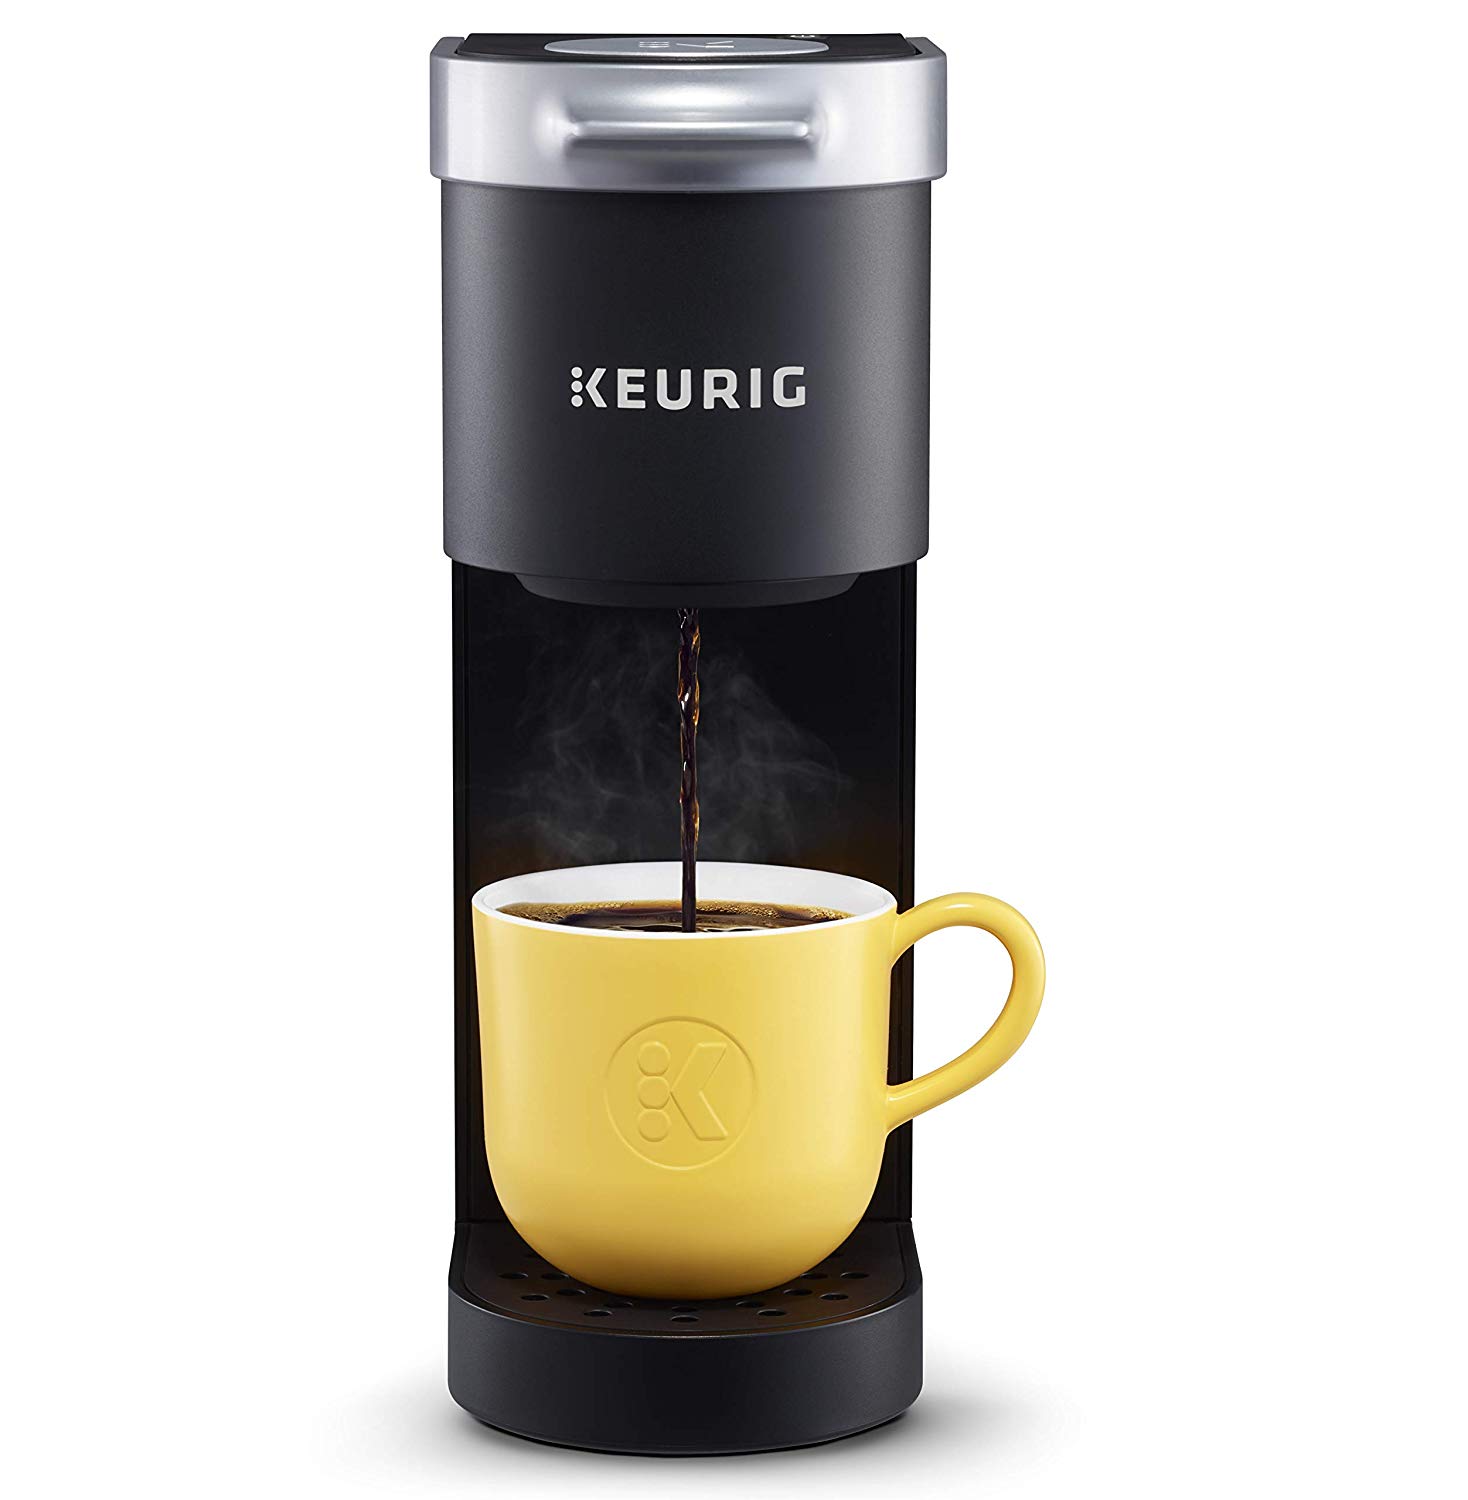 Single-serve Keurig coffee maker